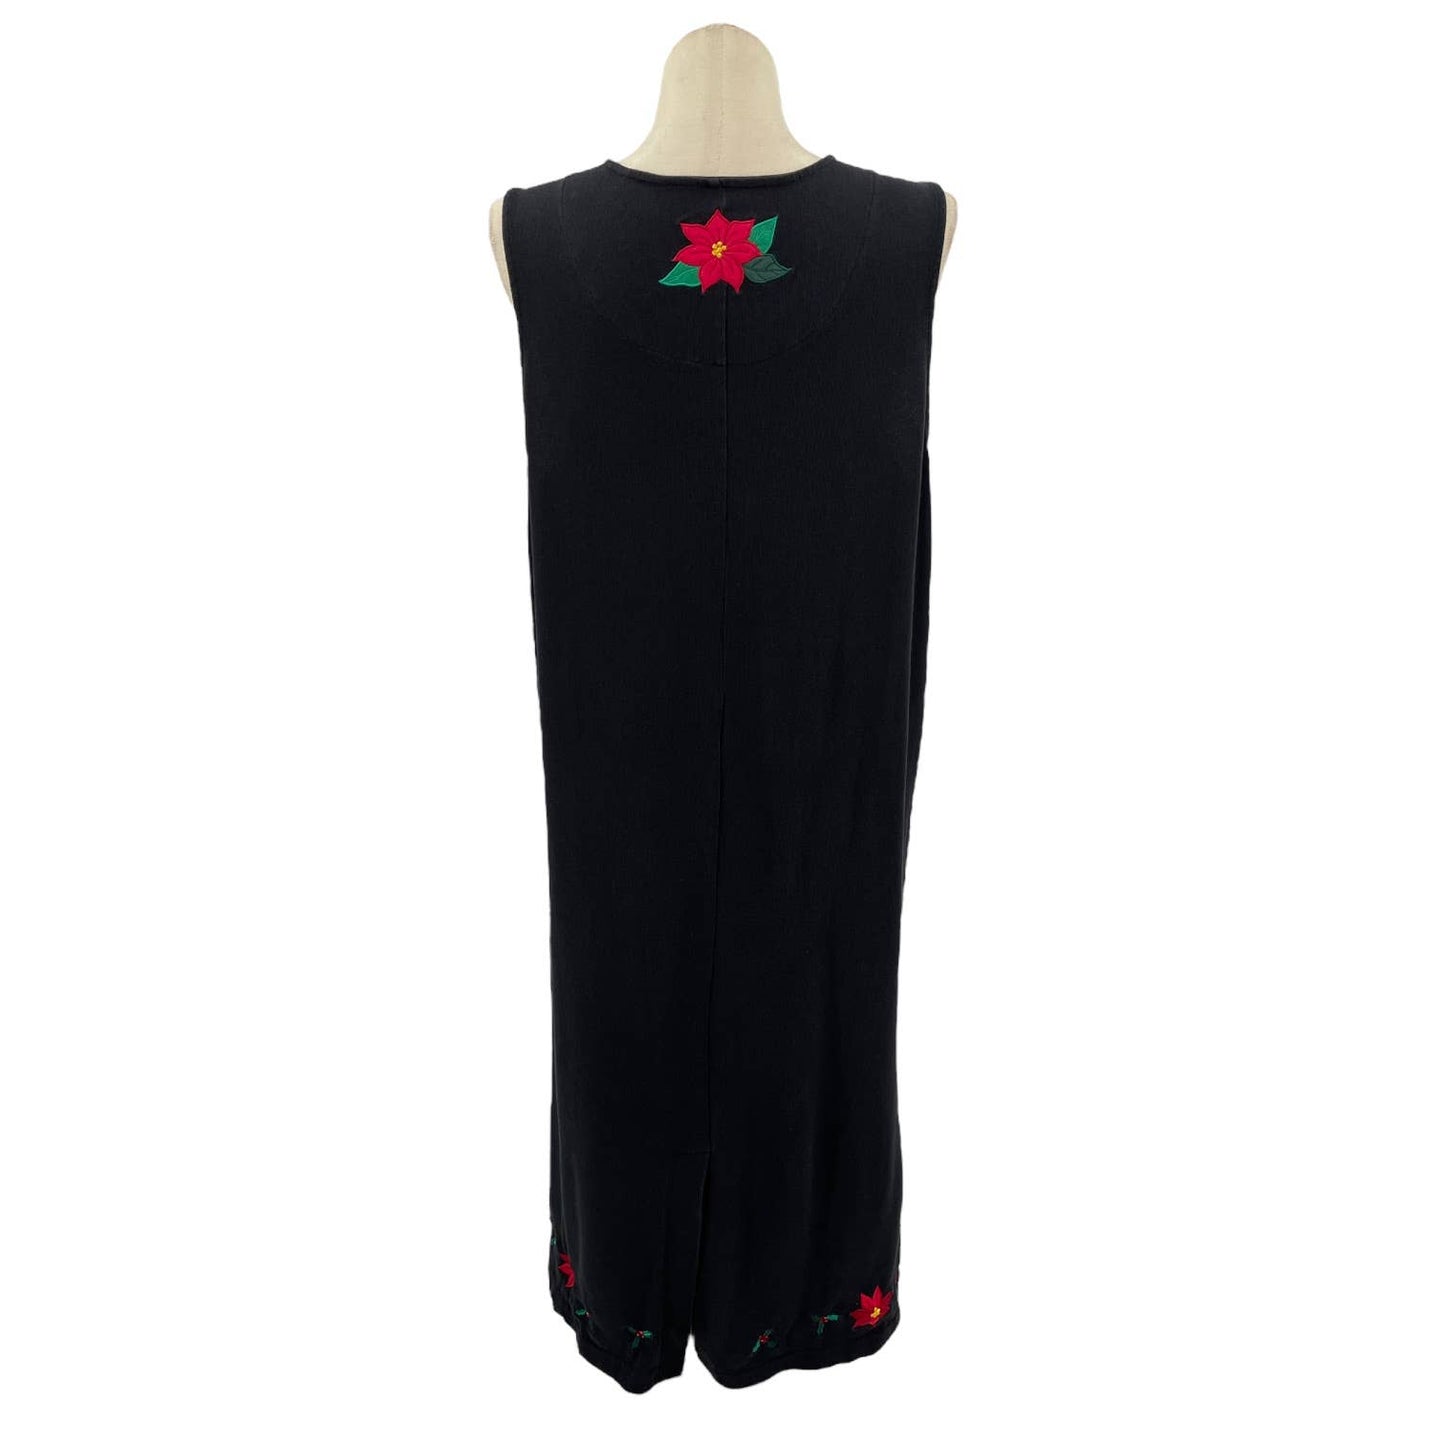 Vintage 90s Black Tank Style Dress Poinsettia Applique Sleeveless Bechamel Sz XL